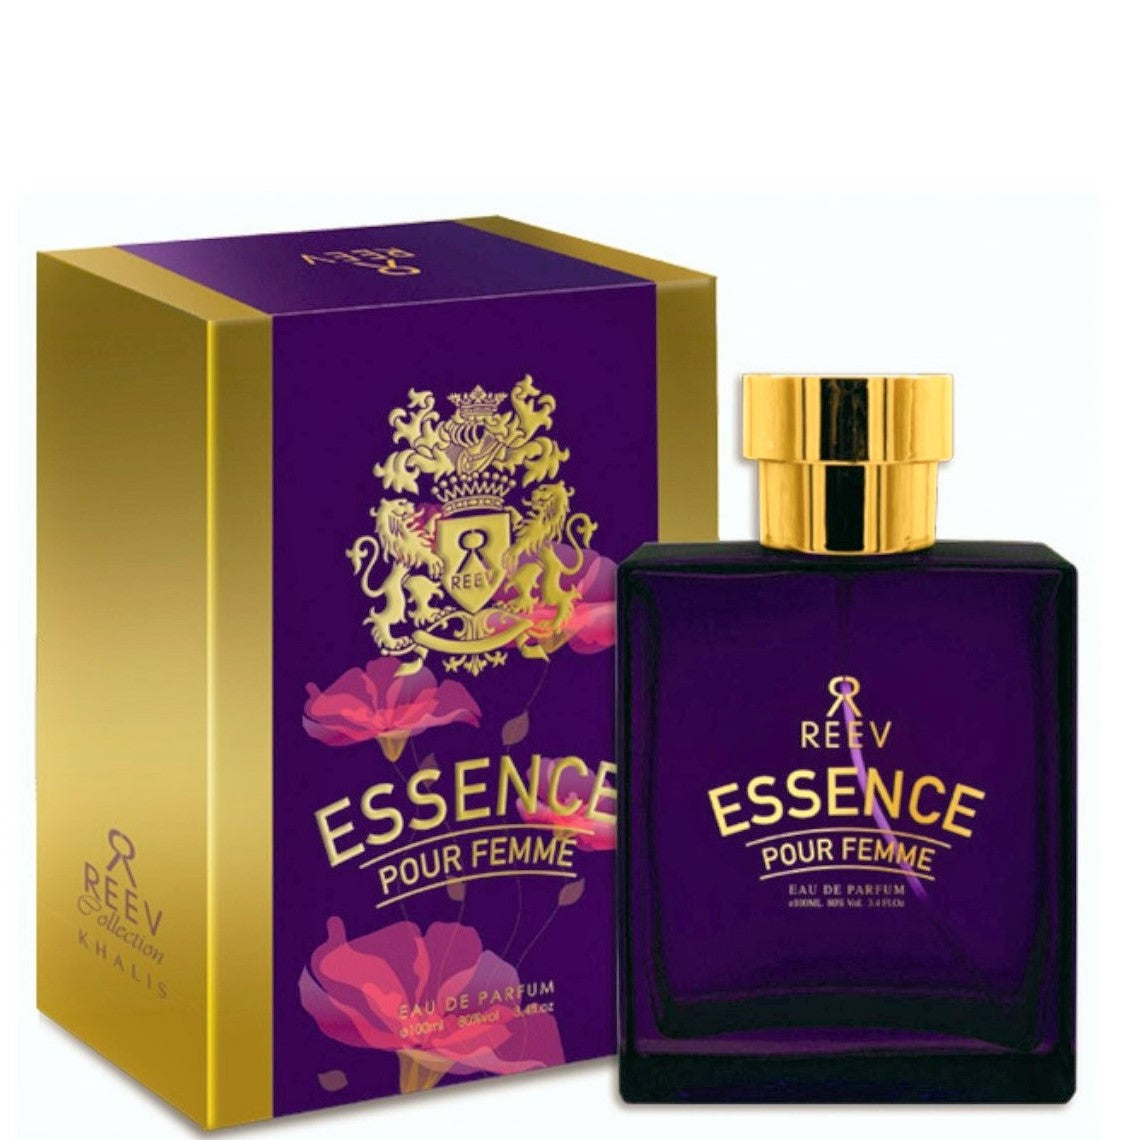 100 ml Woda perfumowana Essence Kwiatowy, waniliowo-drzewny zapach dla kobiet